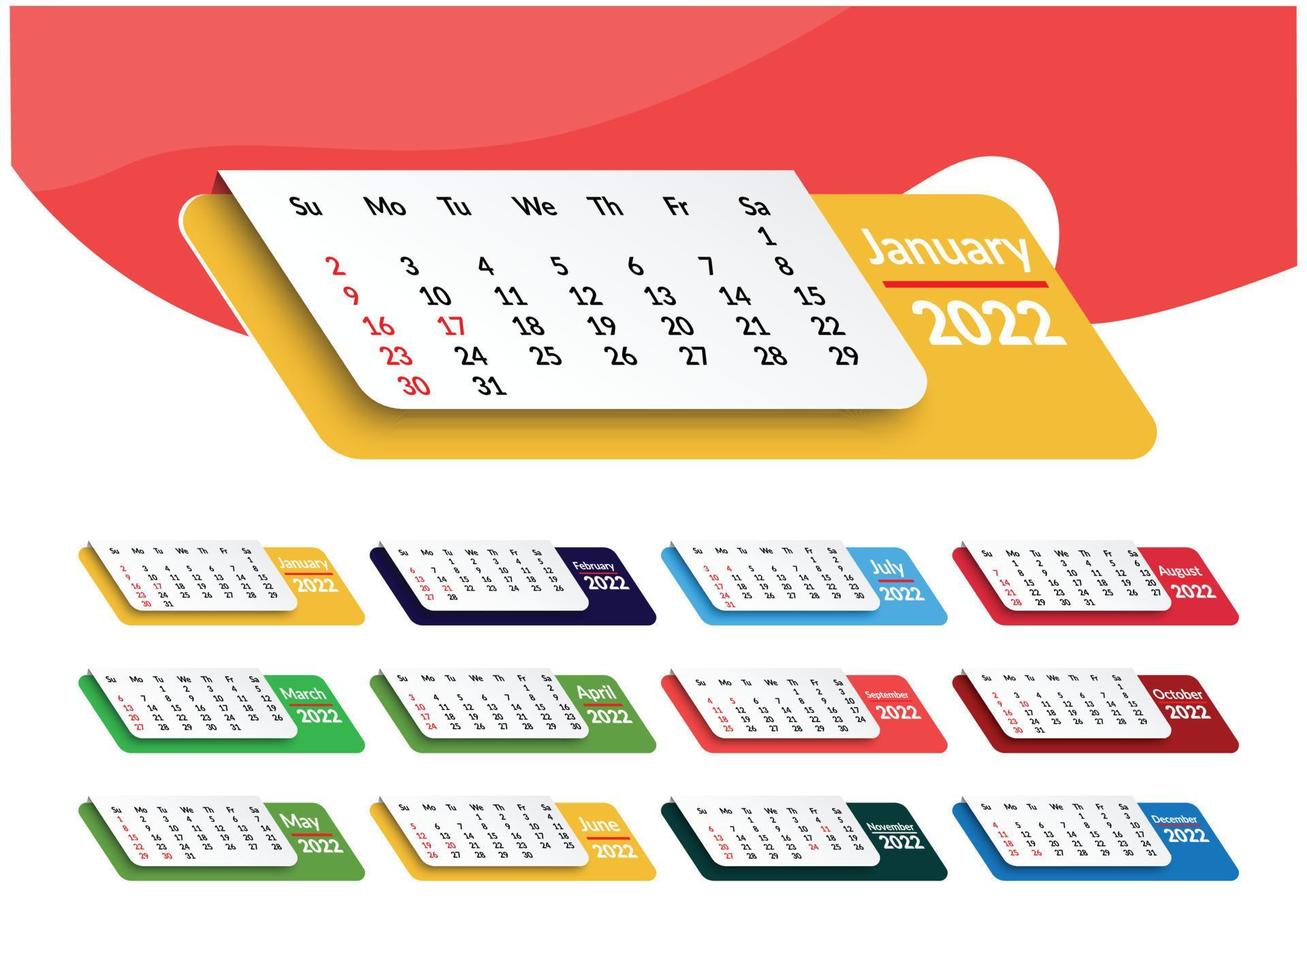 modello di calendario mensile per l'anno 2022. la settimana inizia di domenica. calendario da parete in stile minimalista. calendario 2022 settimana inizio modello pianificatore di progettazione aziendale domenica. vettore